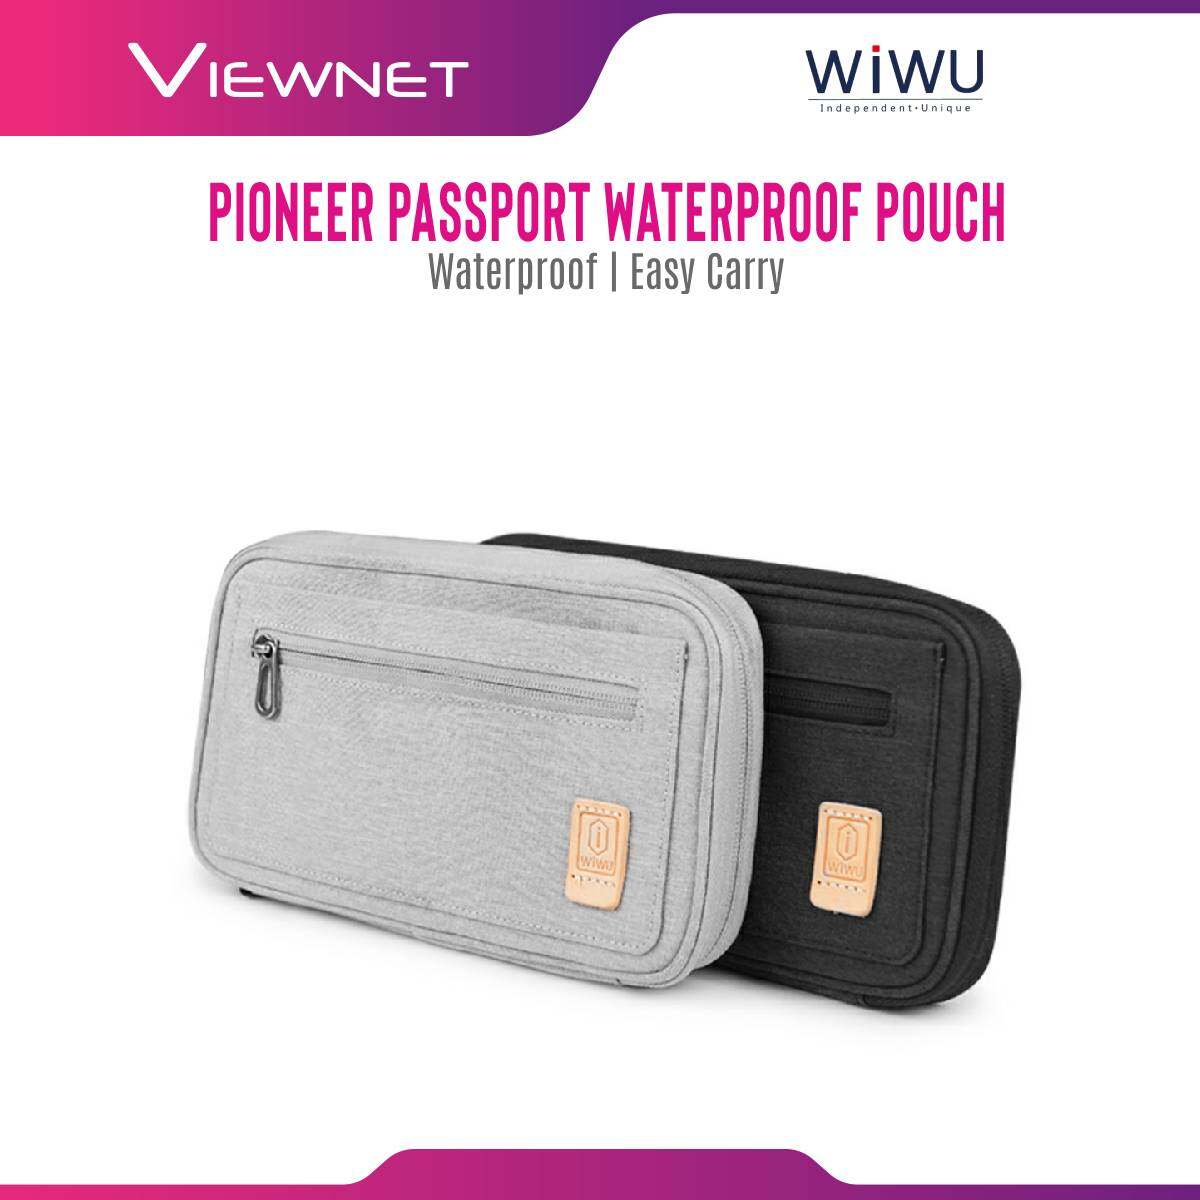 Wiwu Pioner Passport With RFID Block Pouch Case